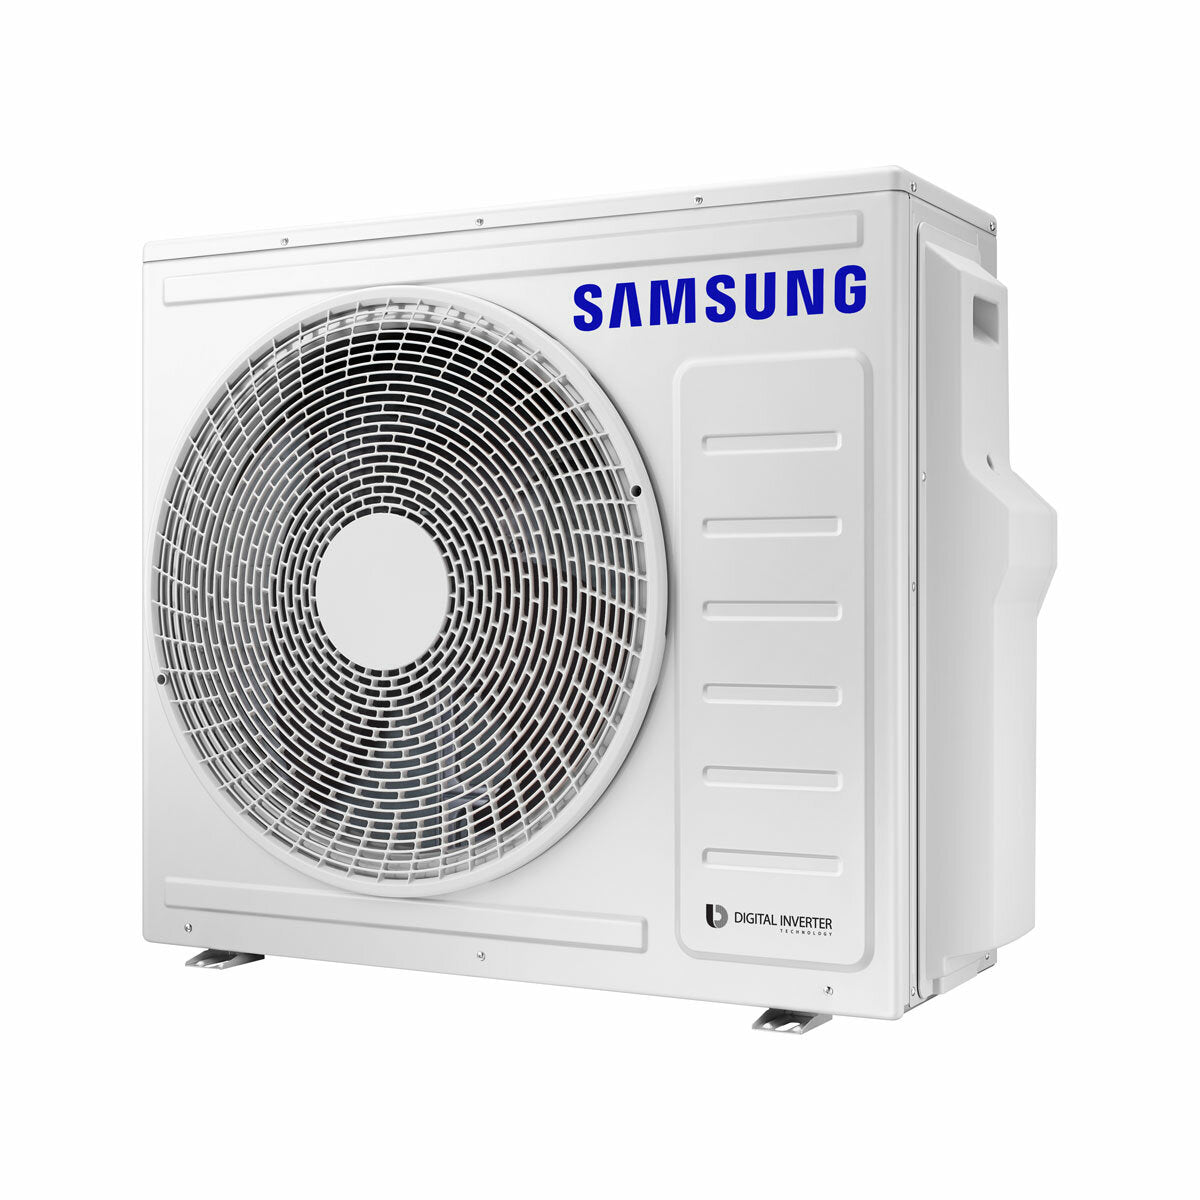 Samsung windfreie Klimaanlage Avant Quadri Split 7000 + 7000 + 7000 + 12000 BTU Inverter A++ WLAN Außengerät 8,0 kW